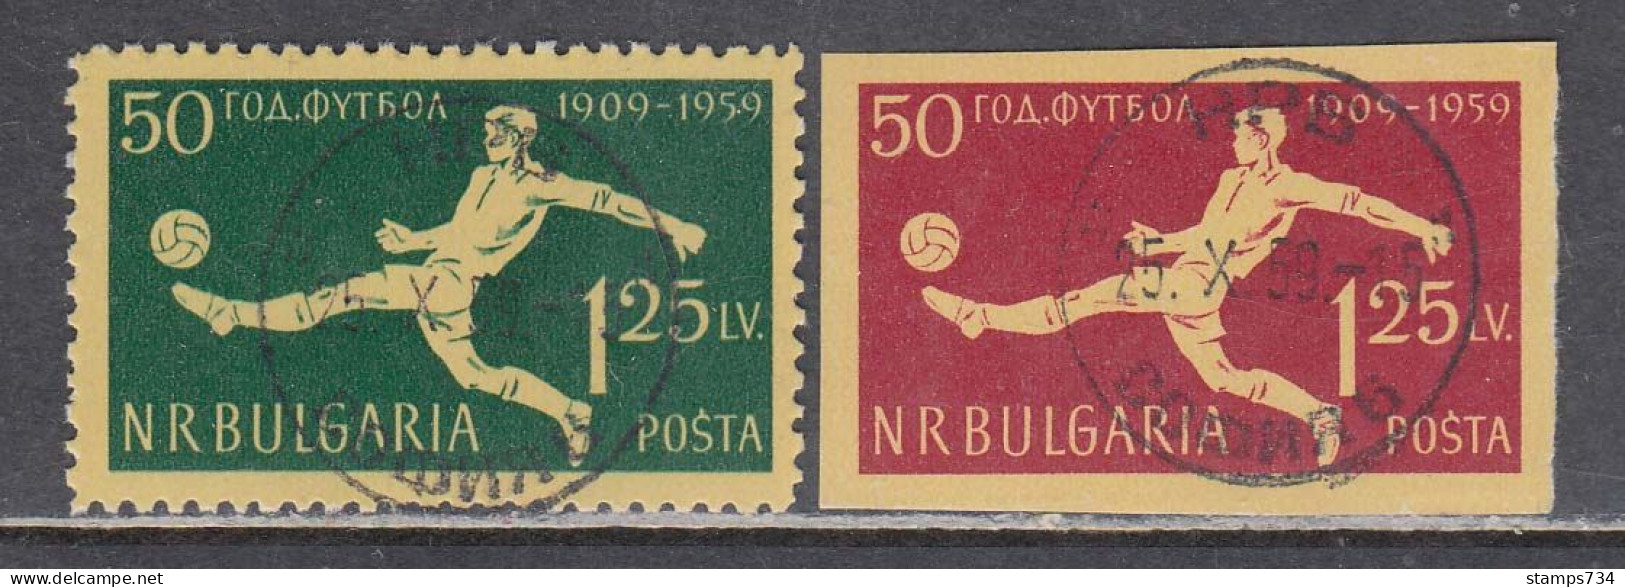 Bulgaria 1959 - 50 Years Football In Bulgarien, Mi-Nr. 1135/36, Used - Usados